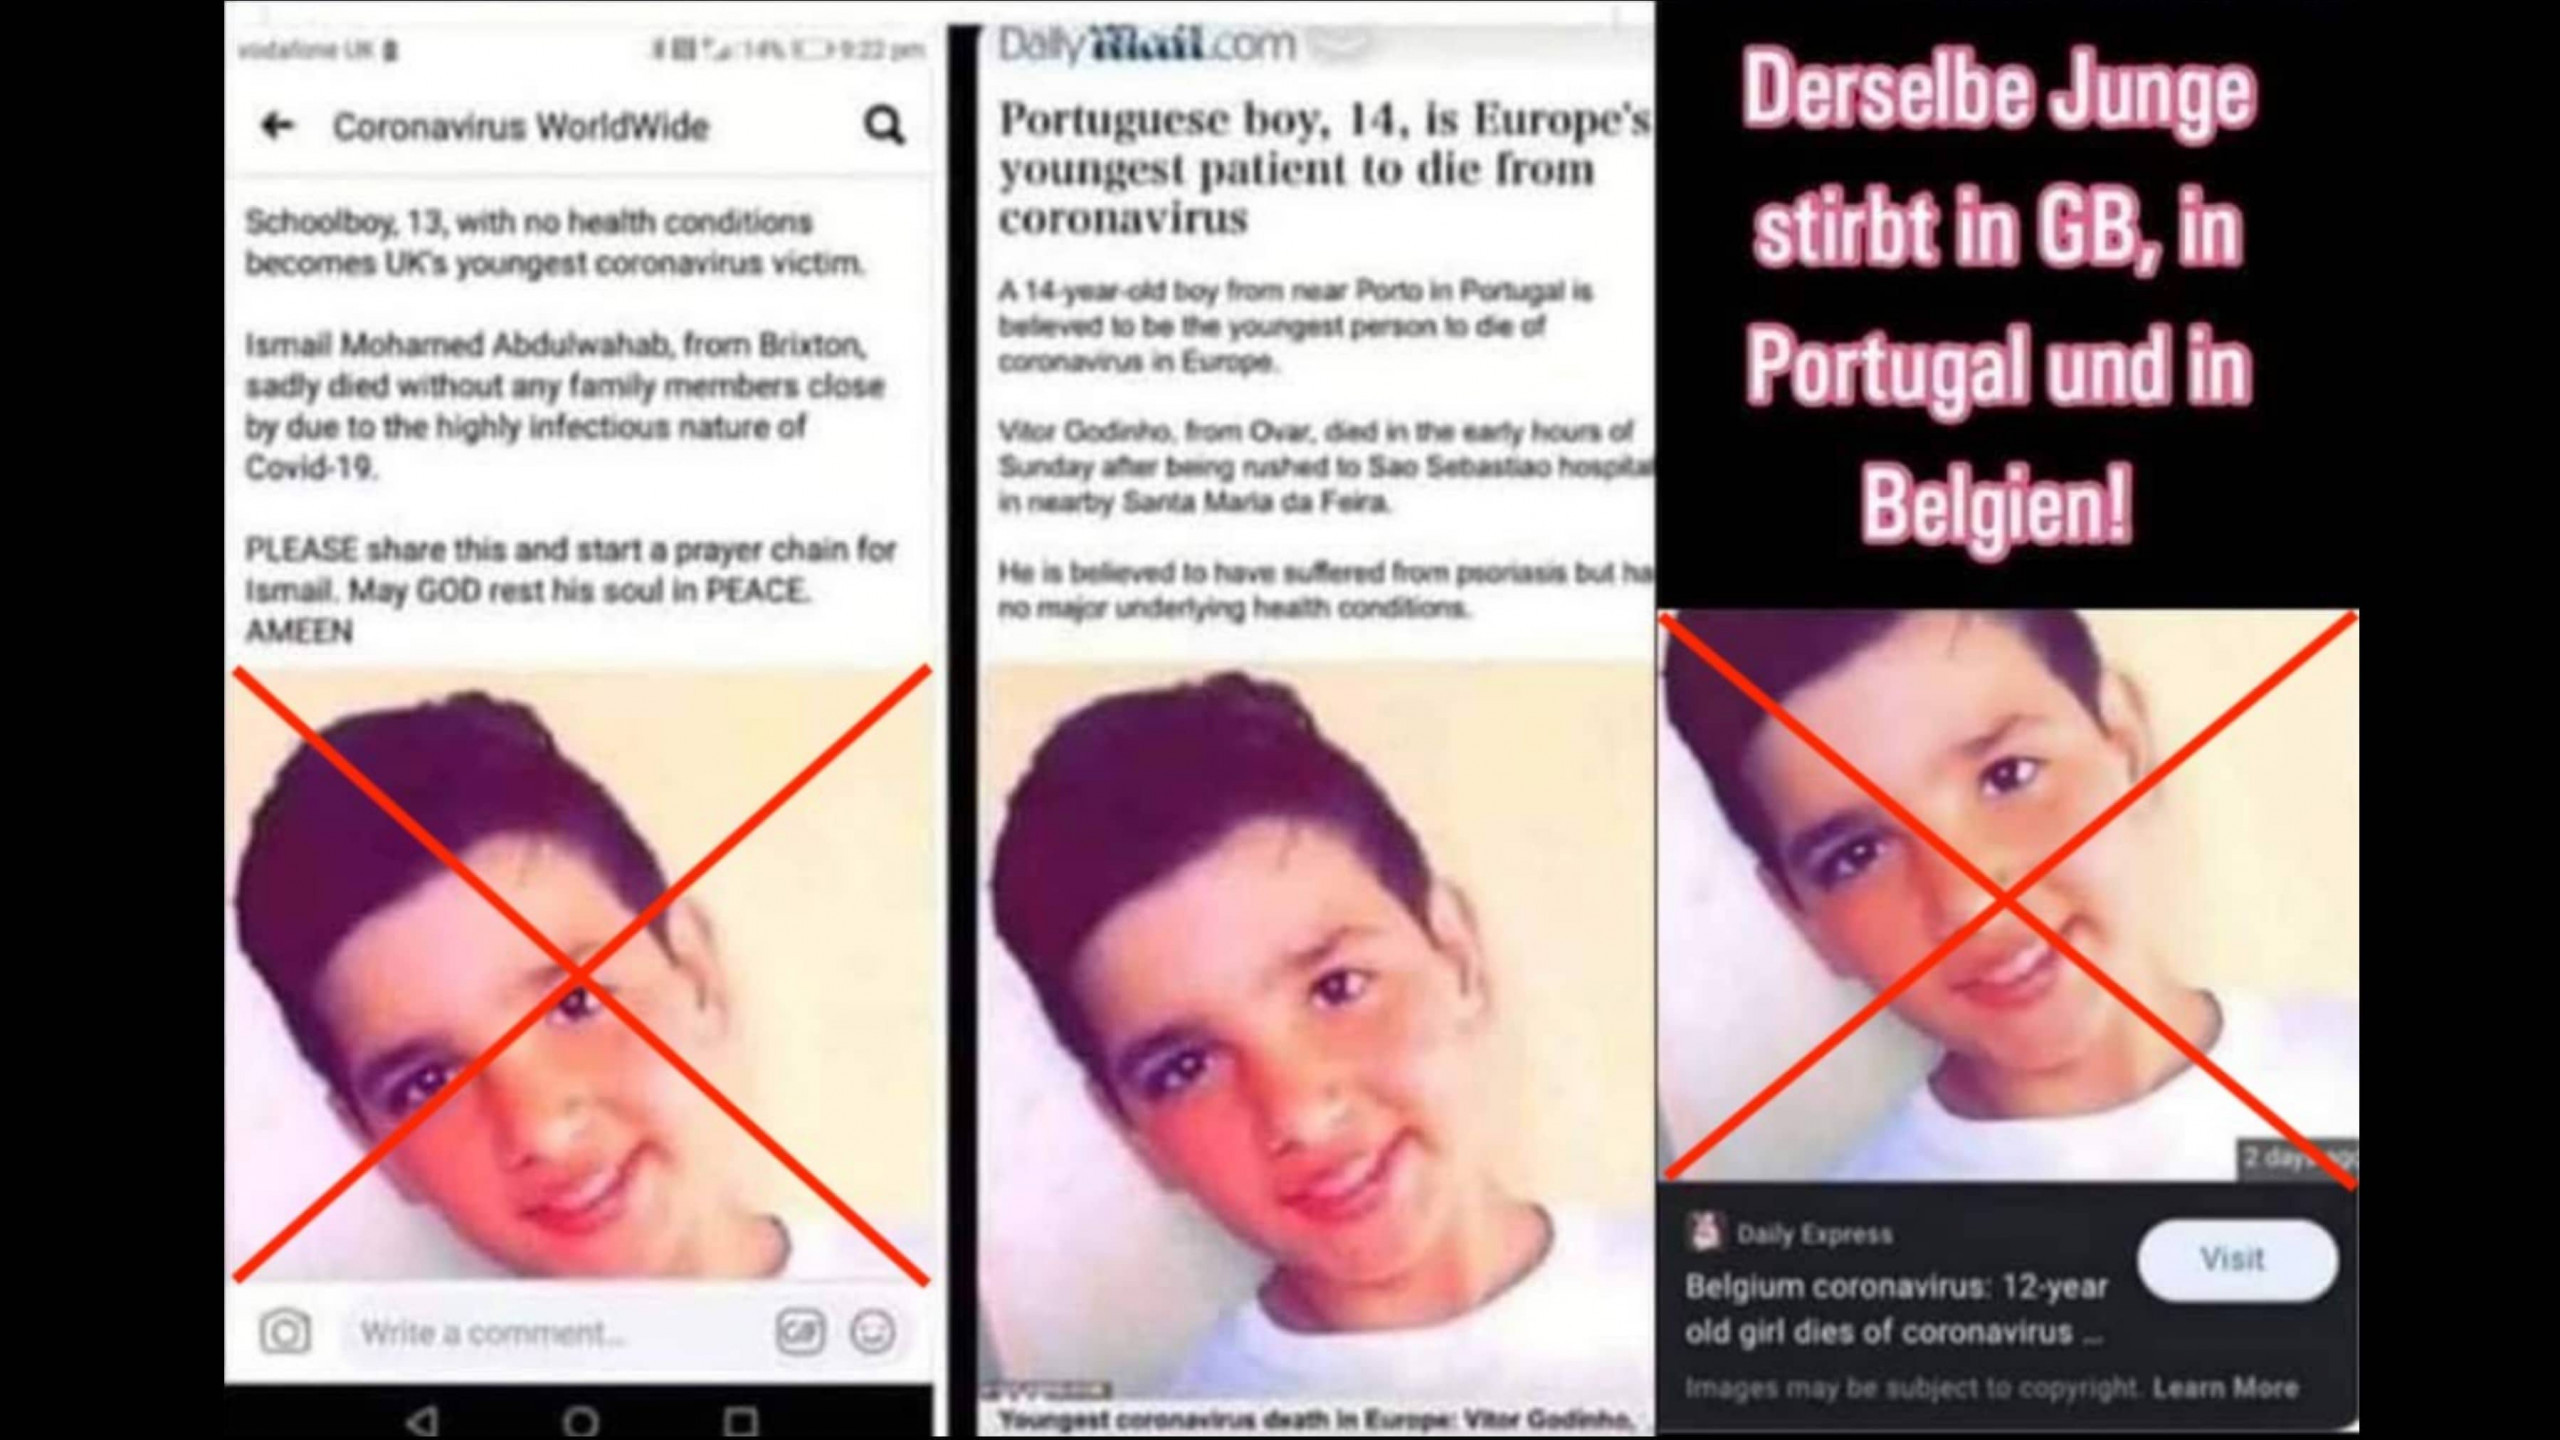 Auf Facebook wird behauptet, derselbe Junge sei in Großbritannien, Portugal und Belgien mit Covid-19 gestorben. In den Berichten in den Screenshots links und rechts geht es aber gar nicht um den Jungen, der auf dem Foto zu sehen ist